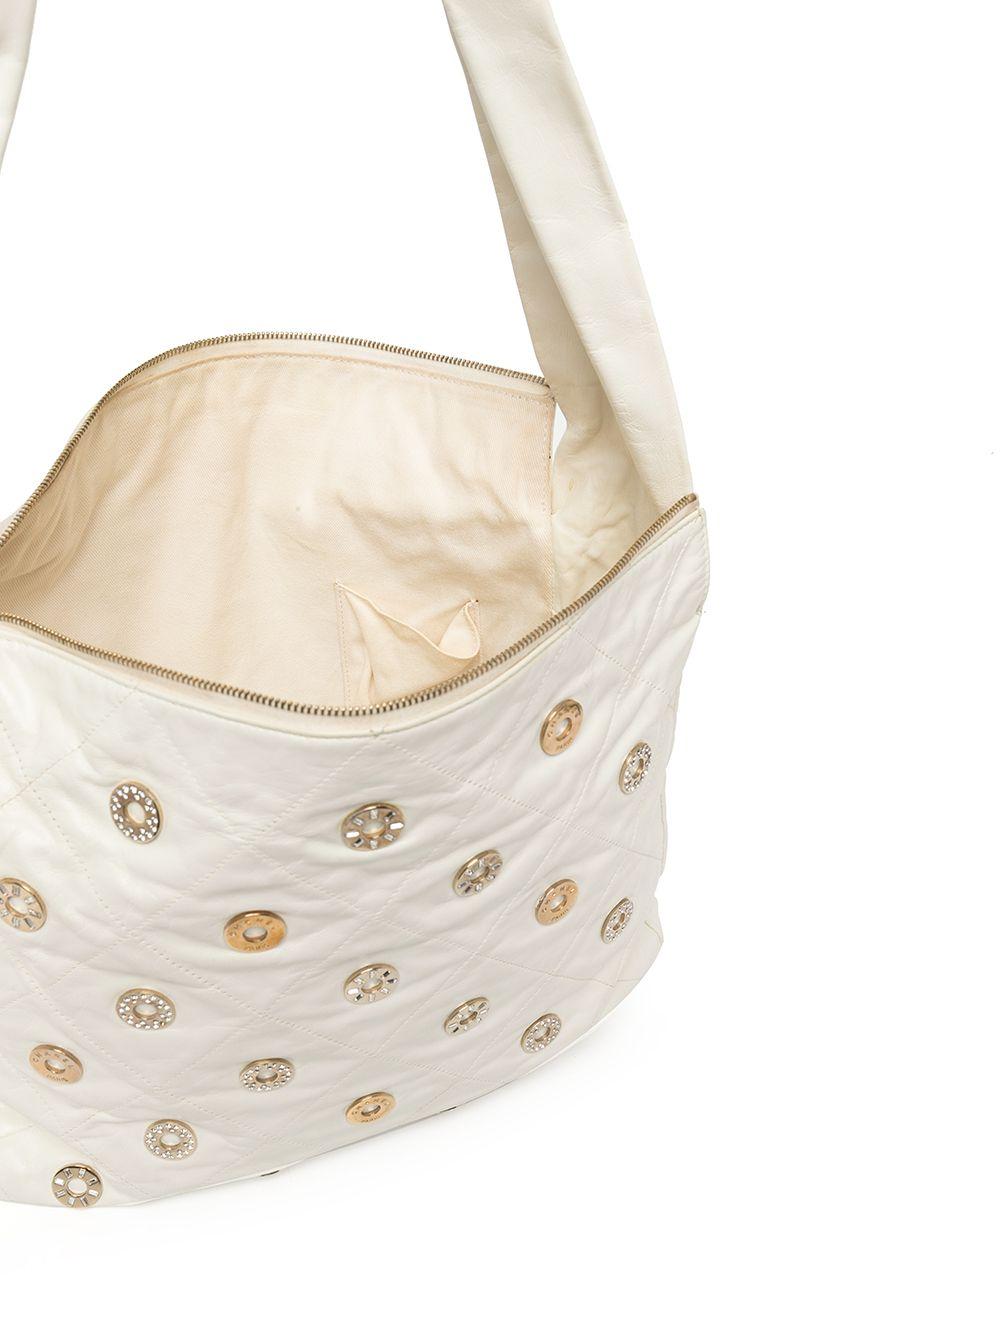 Chanel Rare Vintage 22 White Quilted Swarovski CharmShoulder Hobo Tote Bag For Sale 5